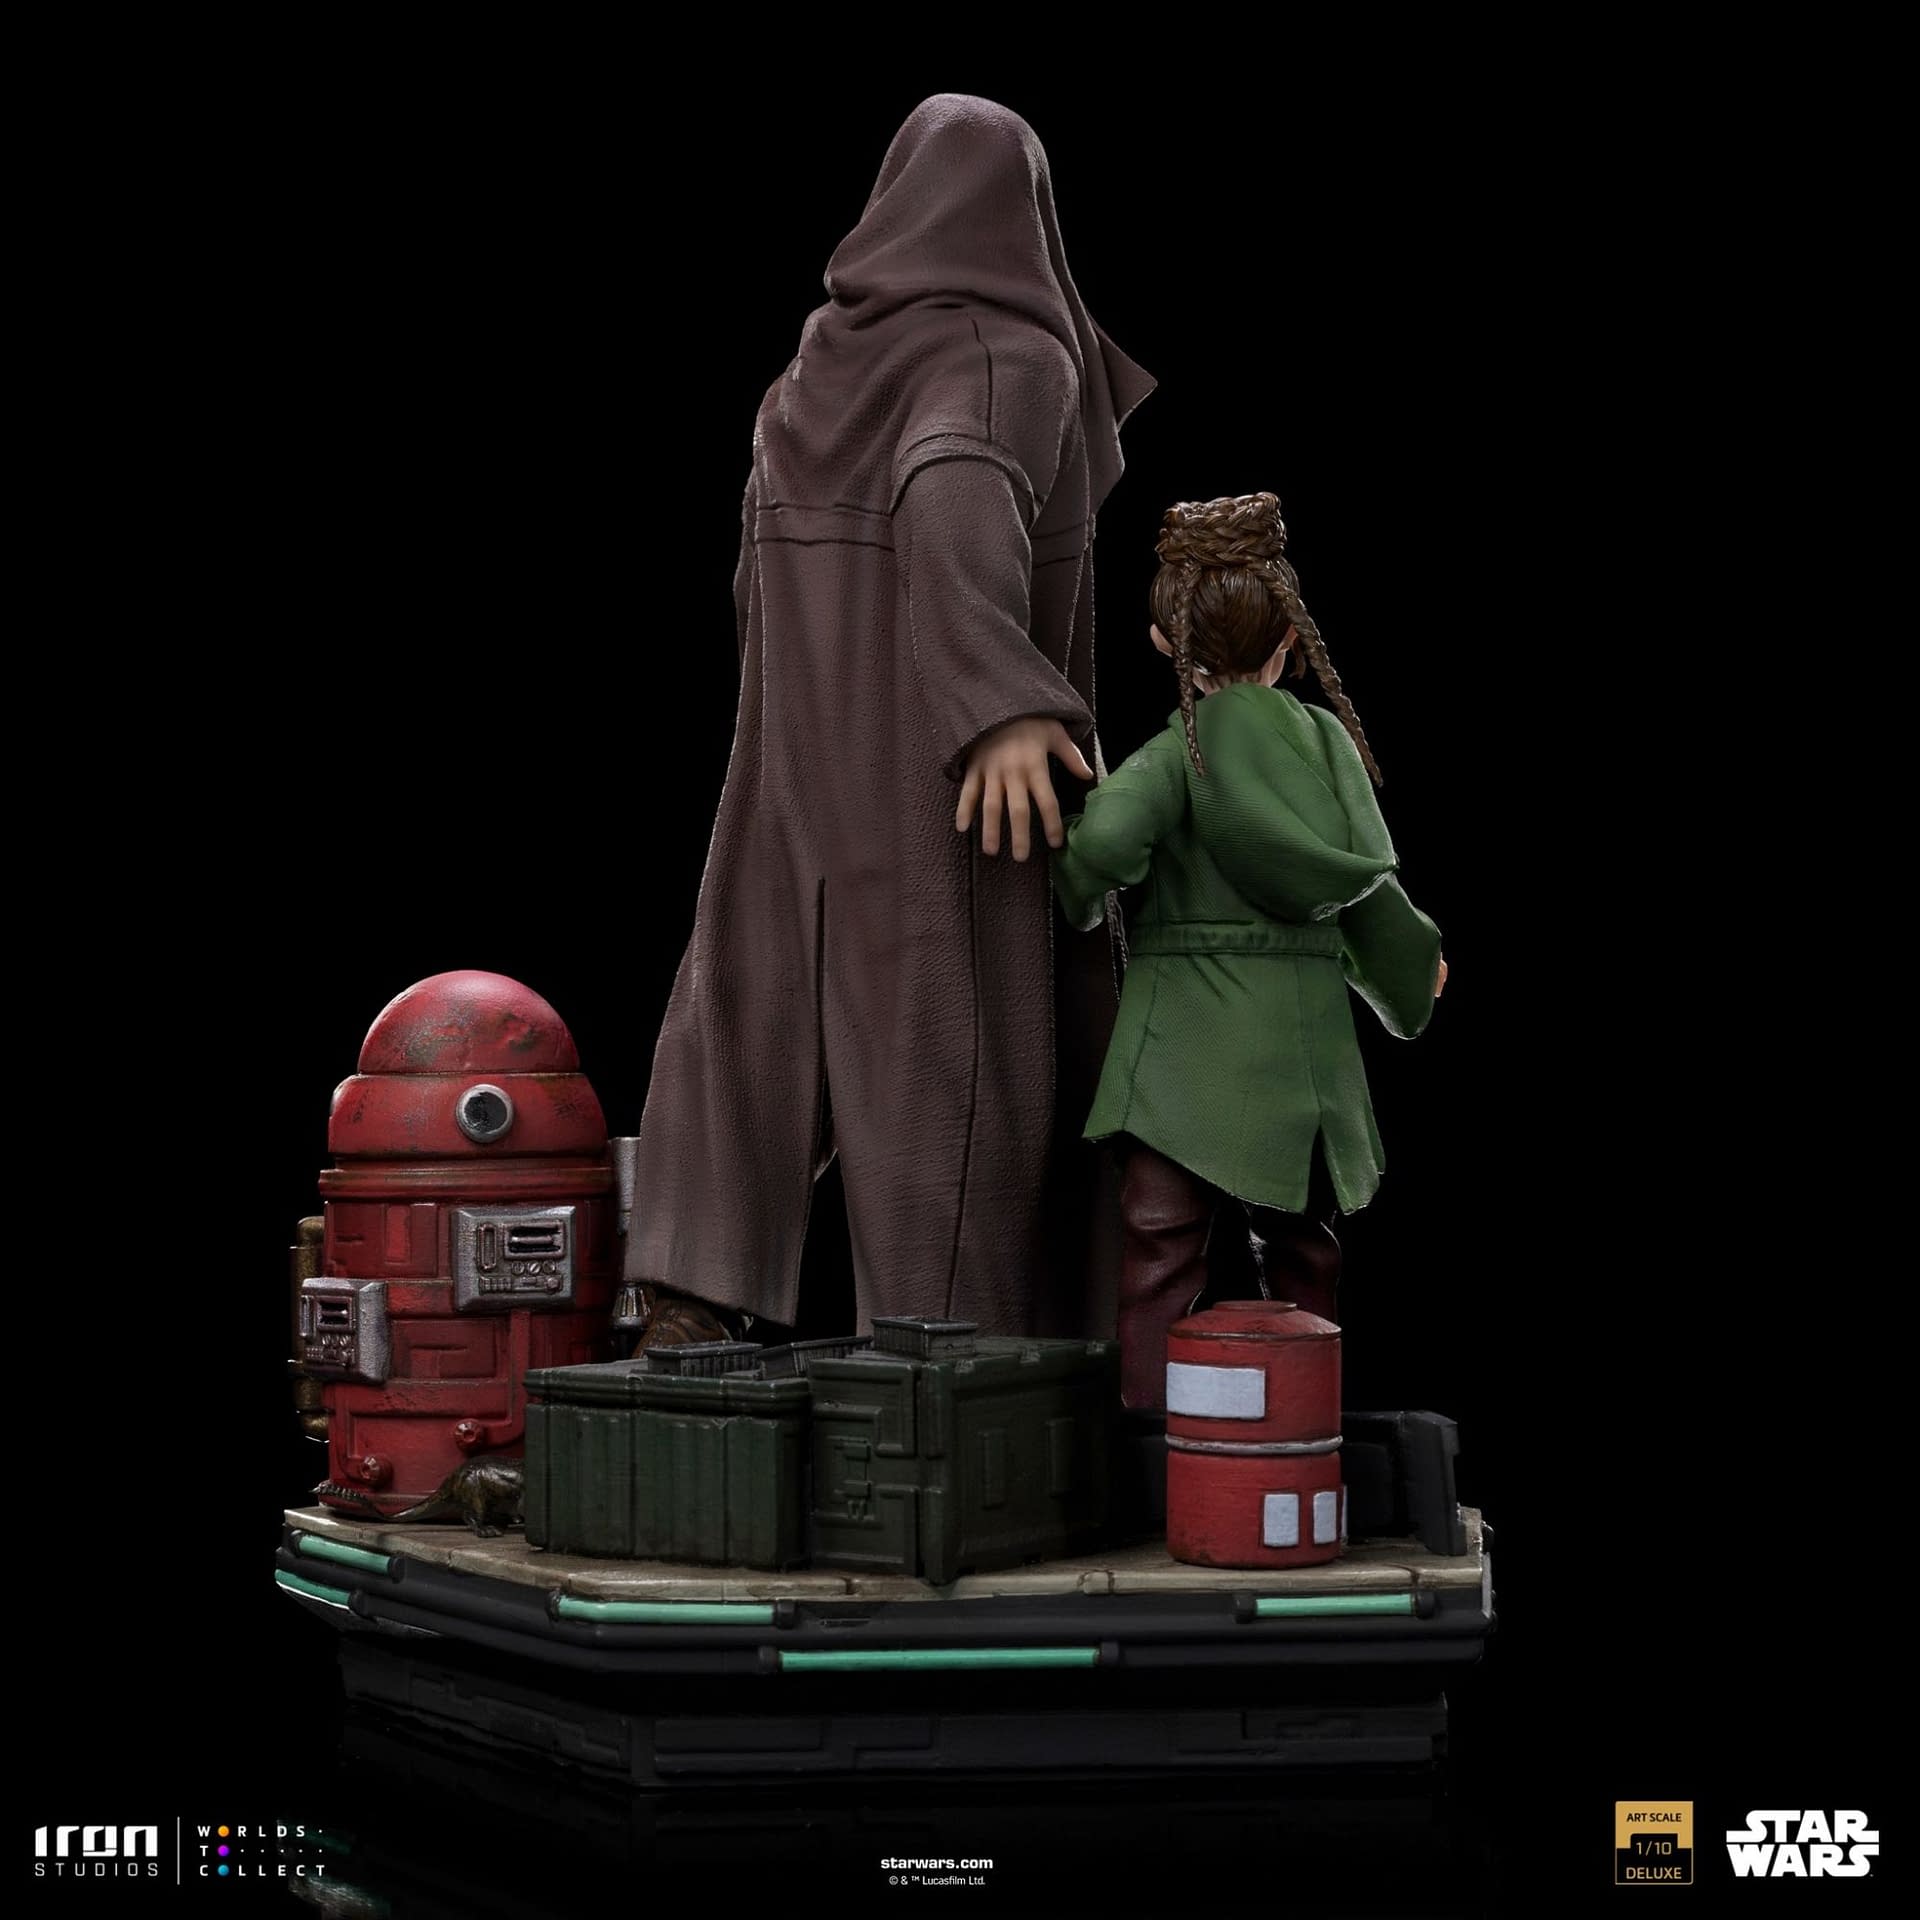 Obi-Wan Kenobi Saves Princess Leia with New Iron Studios Statue 